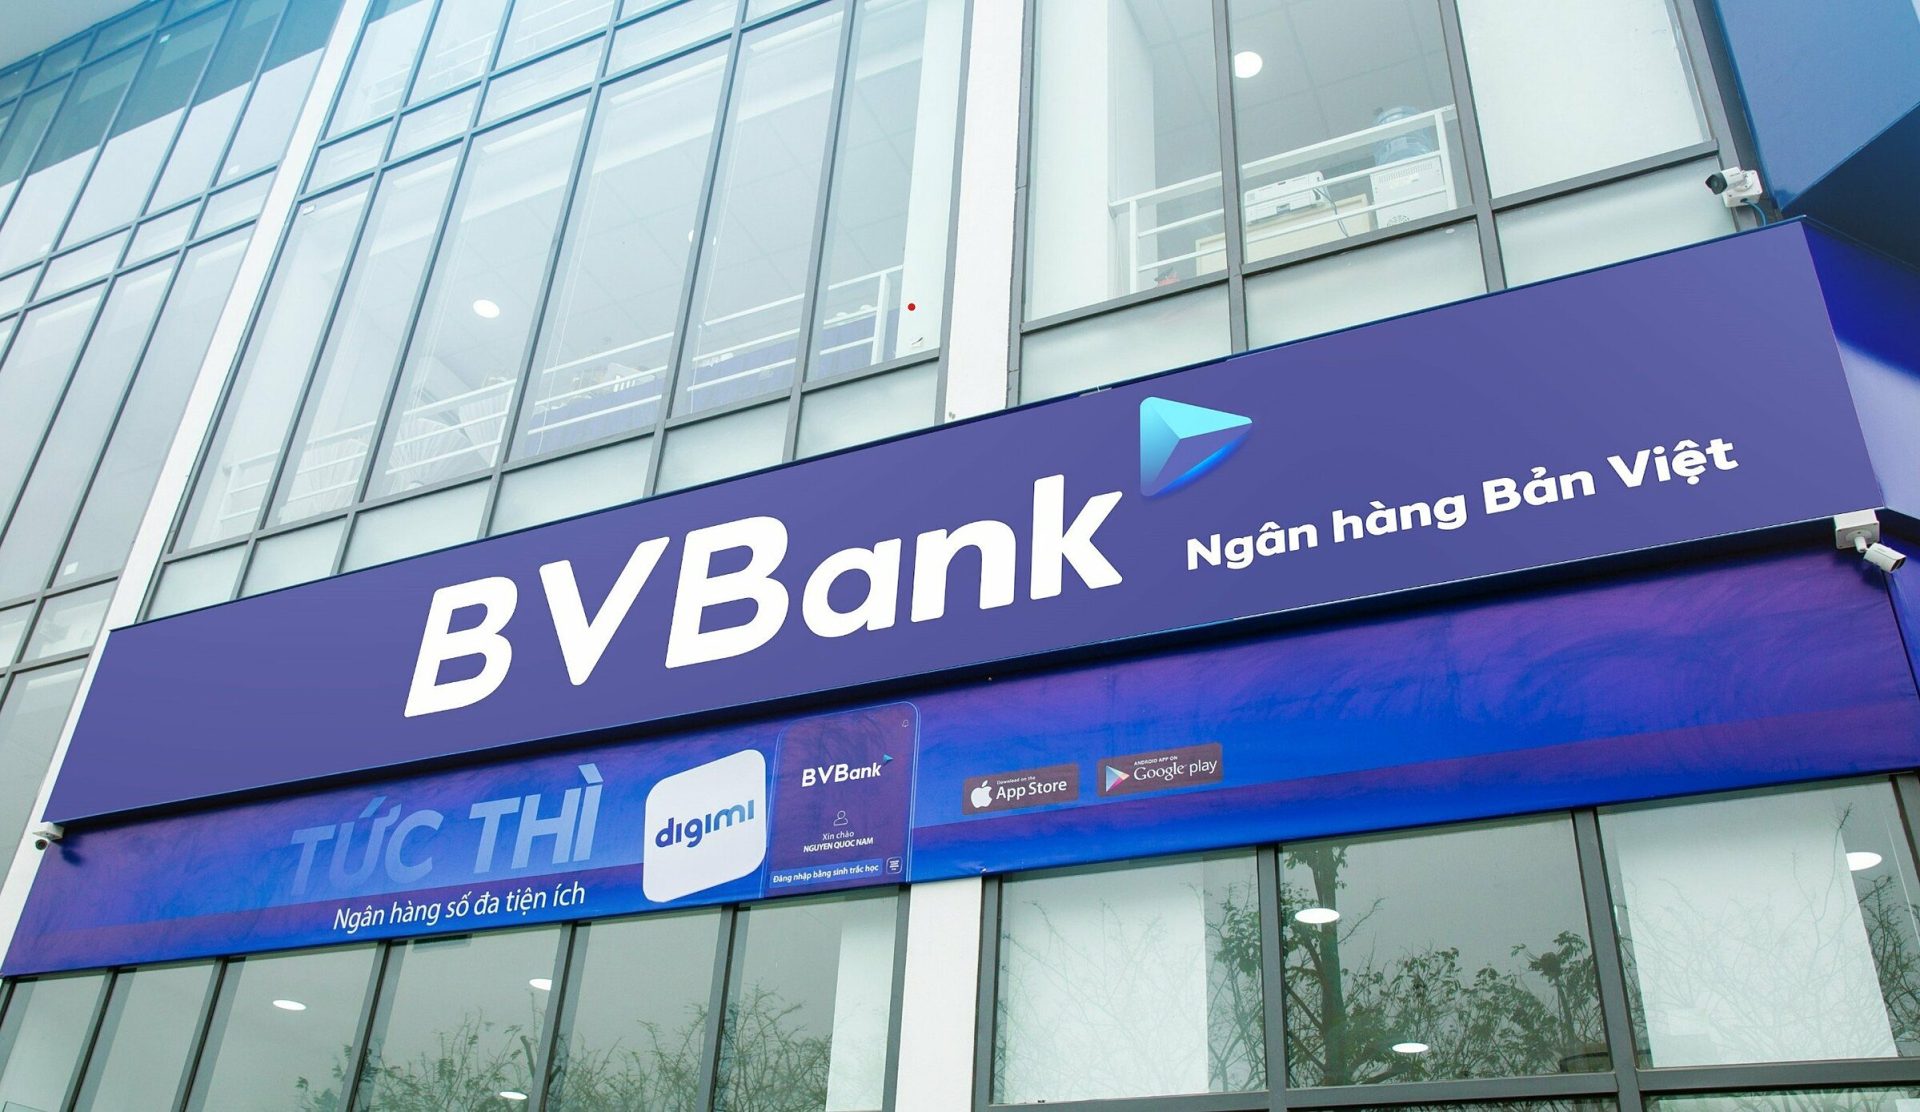 BVBank-Ngan-hang-Ban-Viet